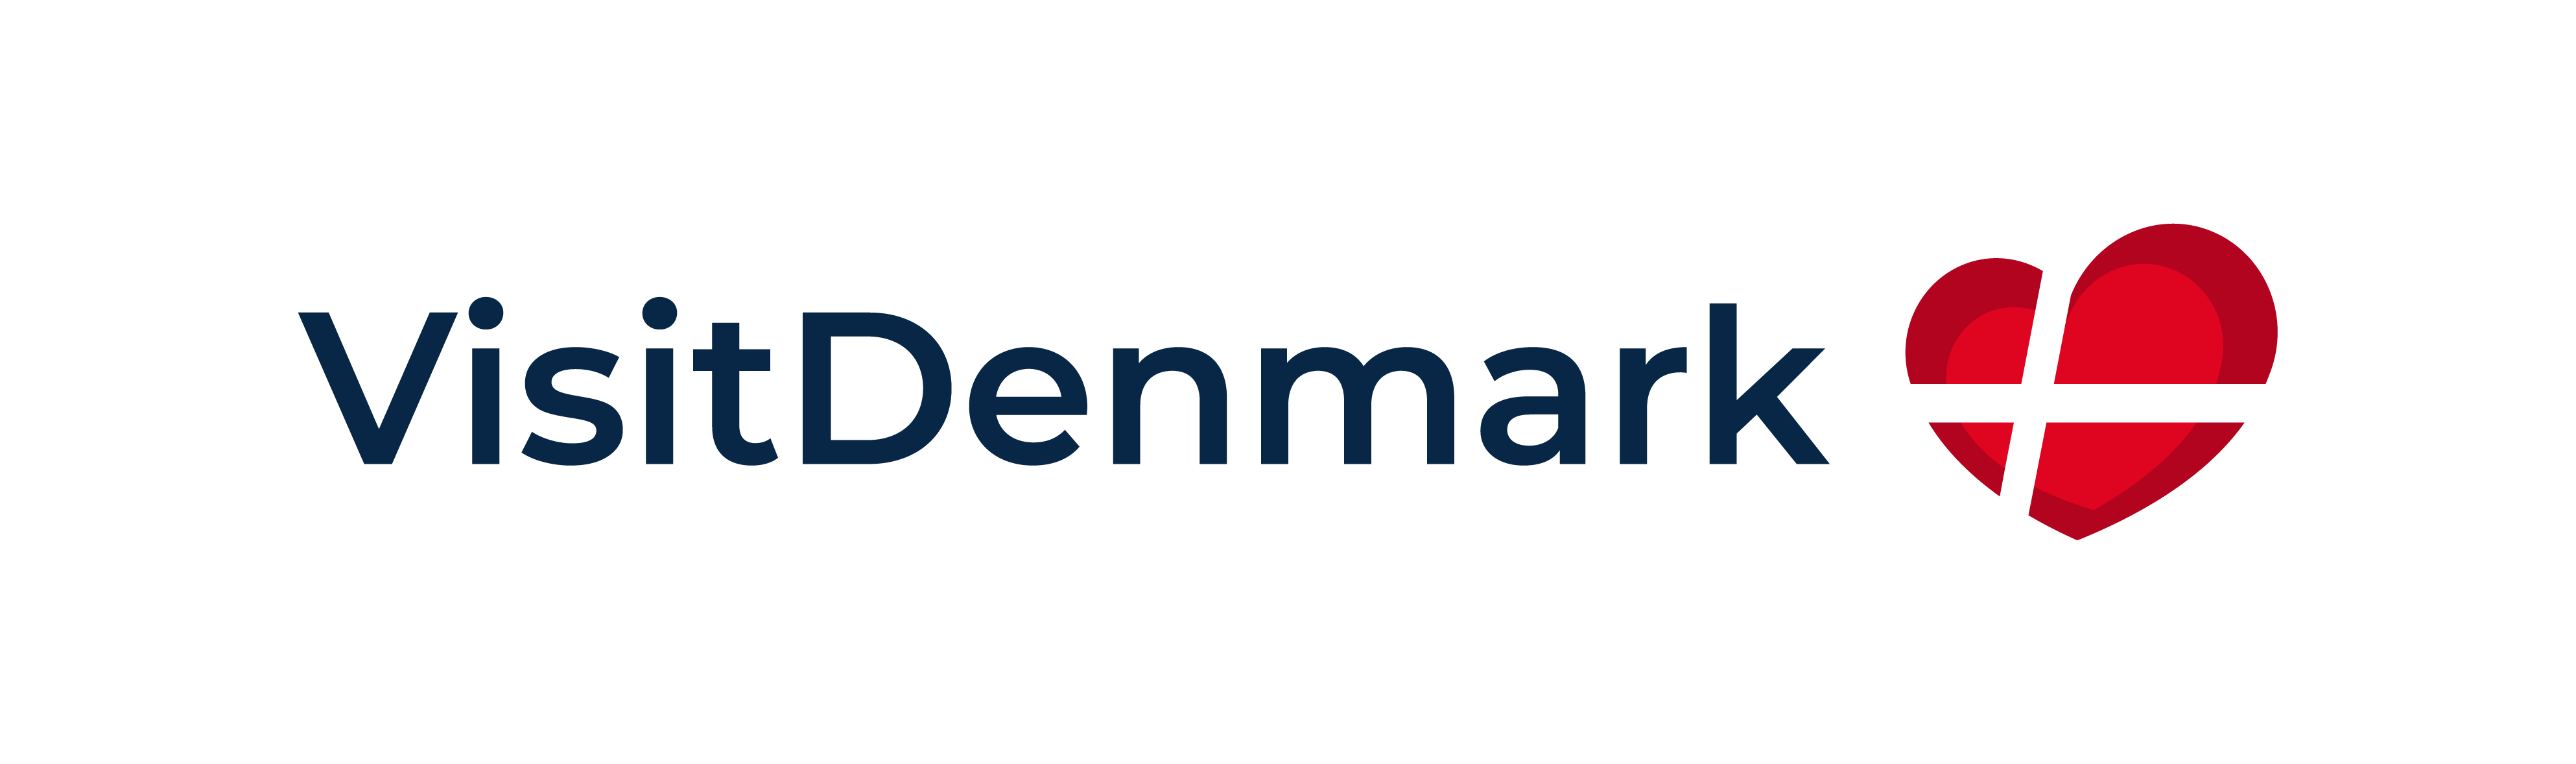 Denmark Course